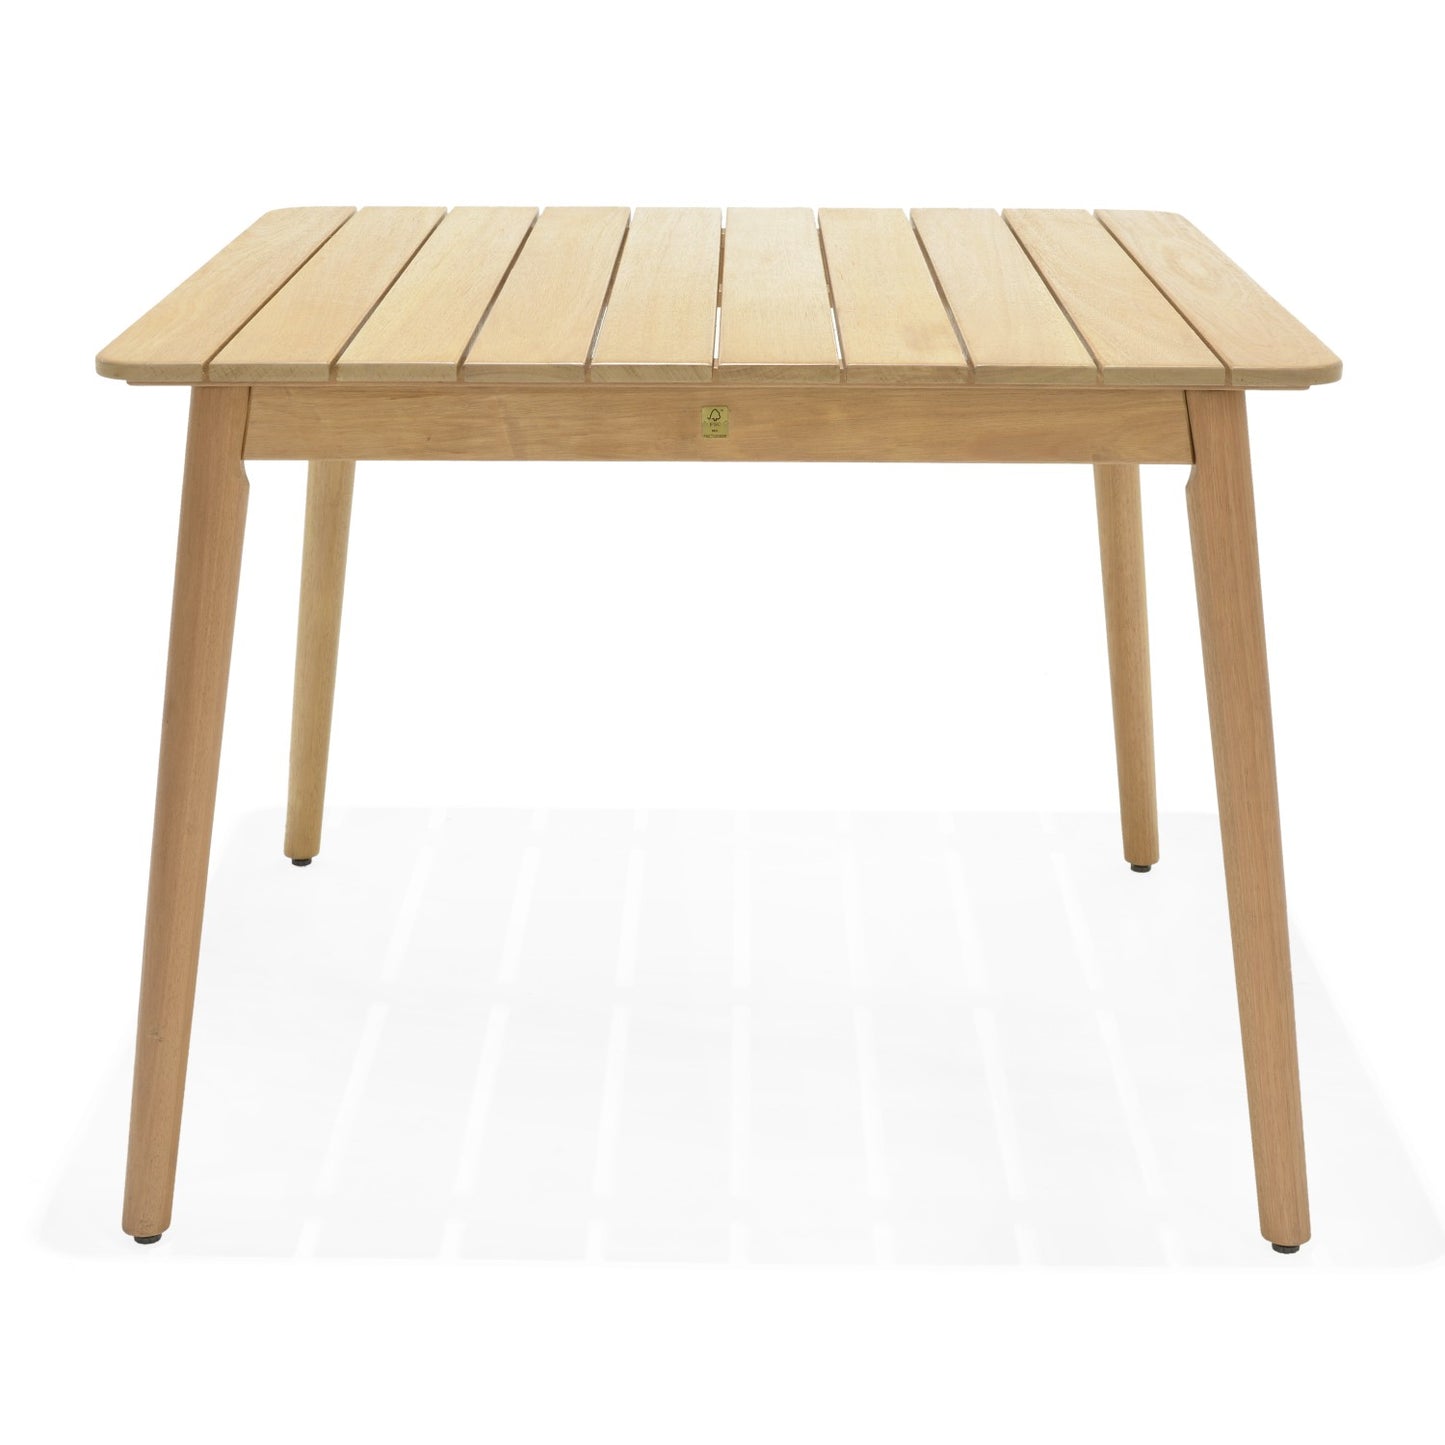 Nassau Square 100% FSC Certified Hardwood table